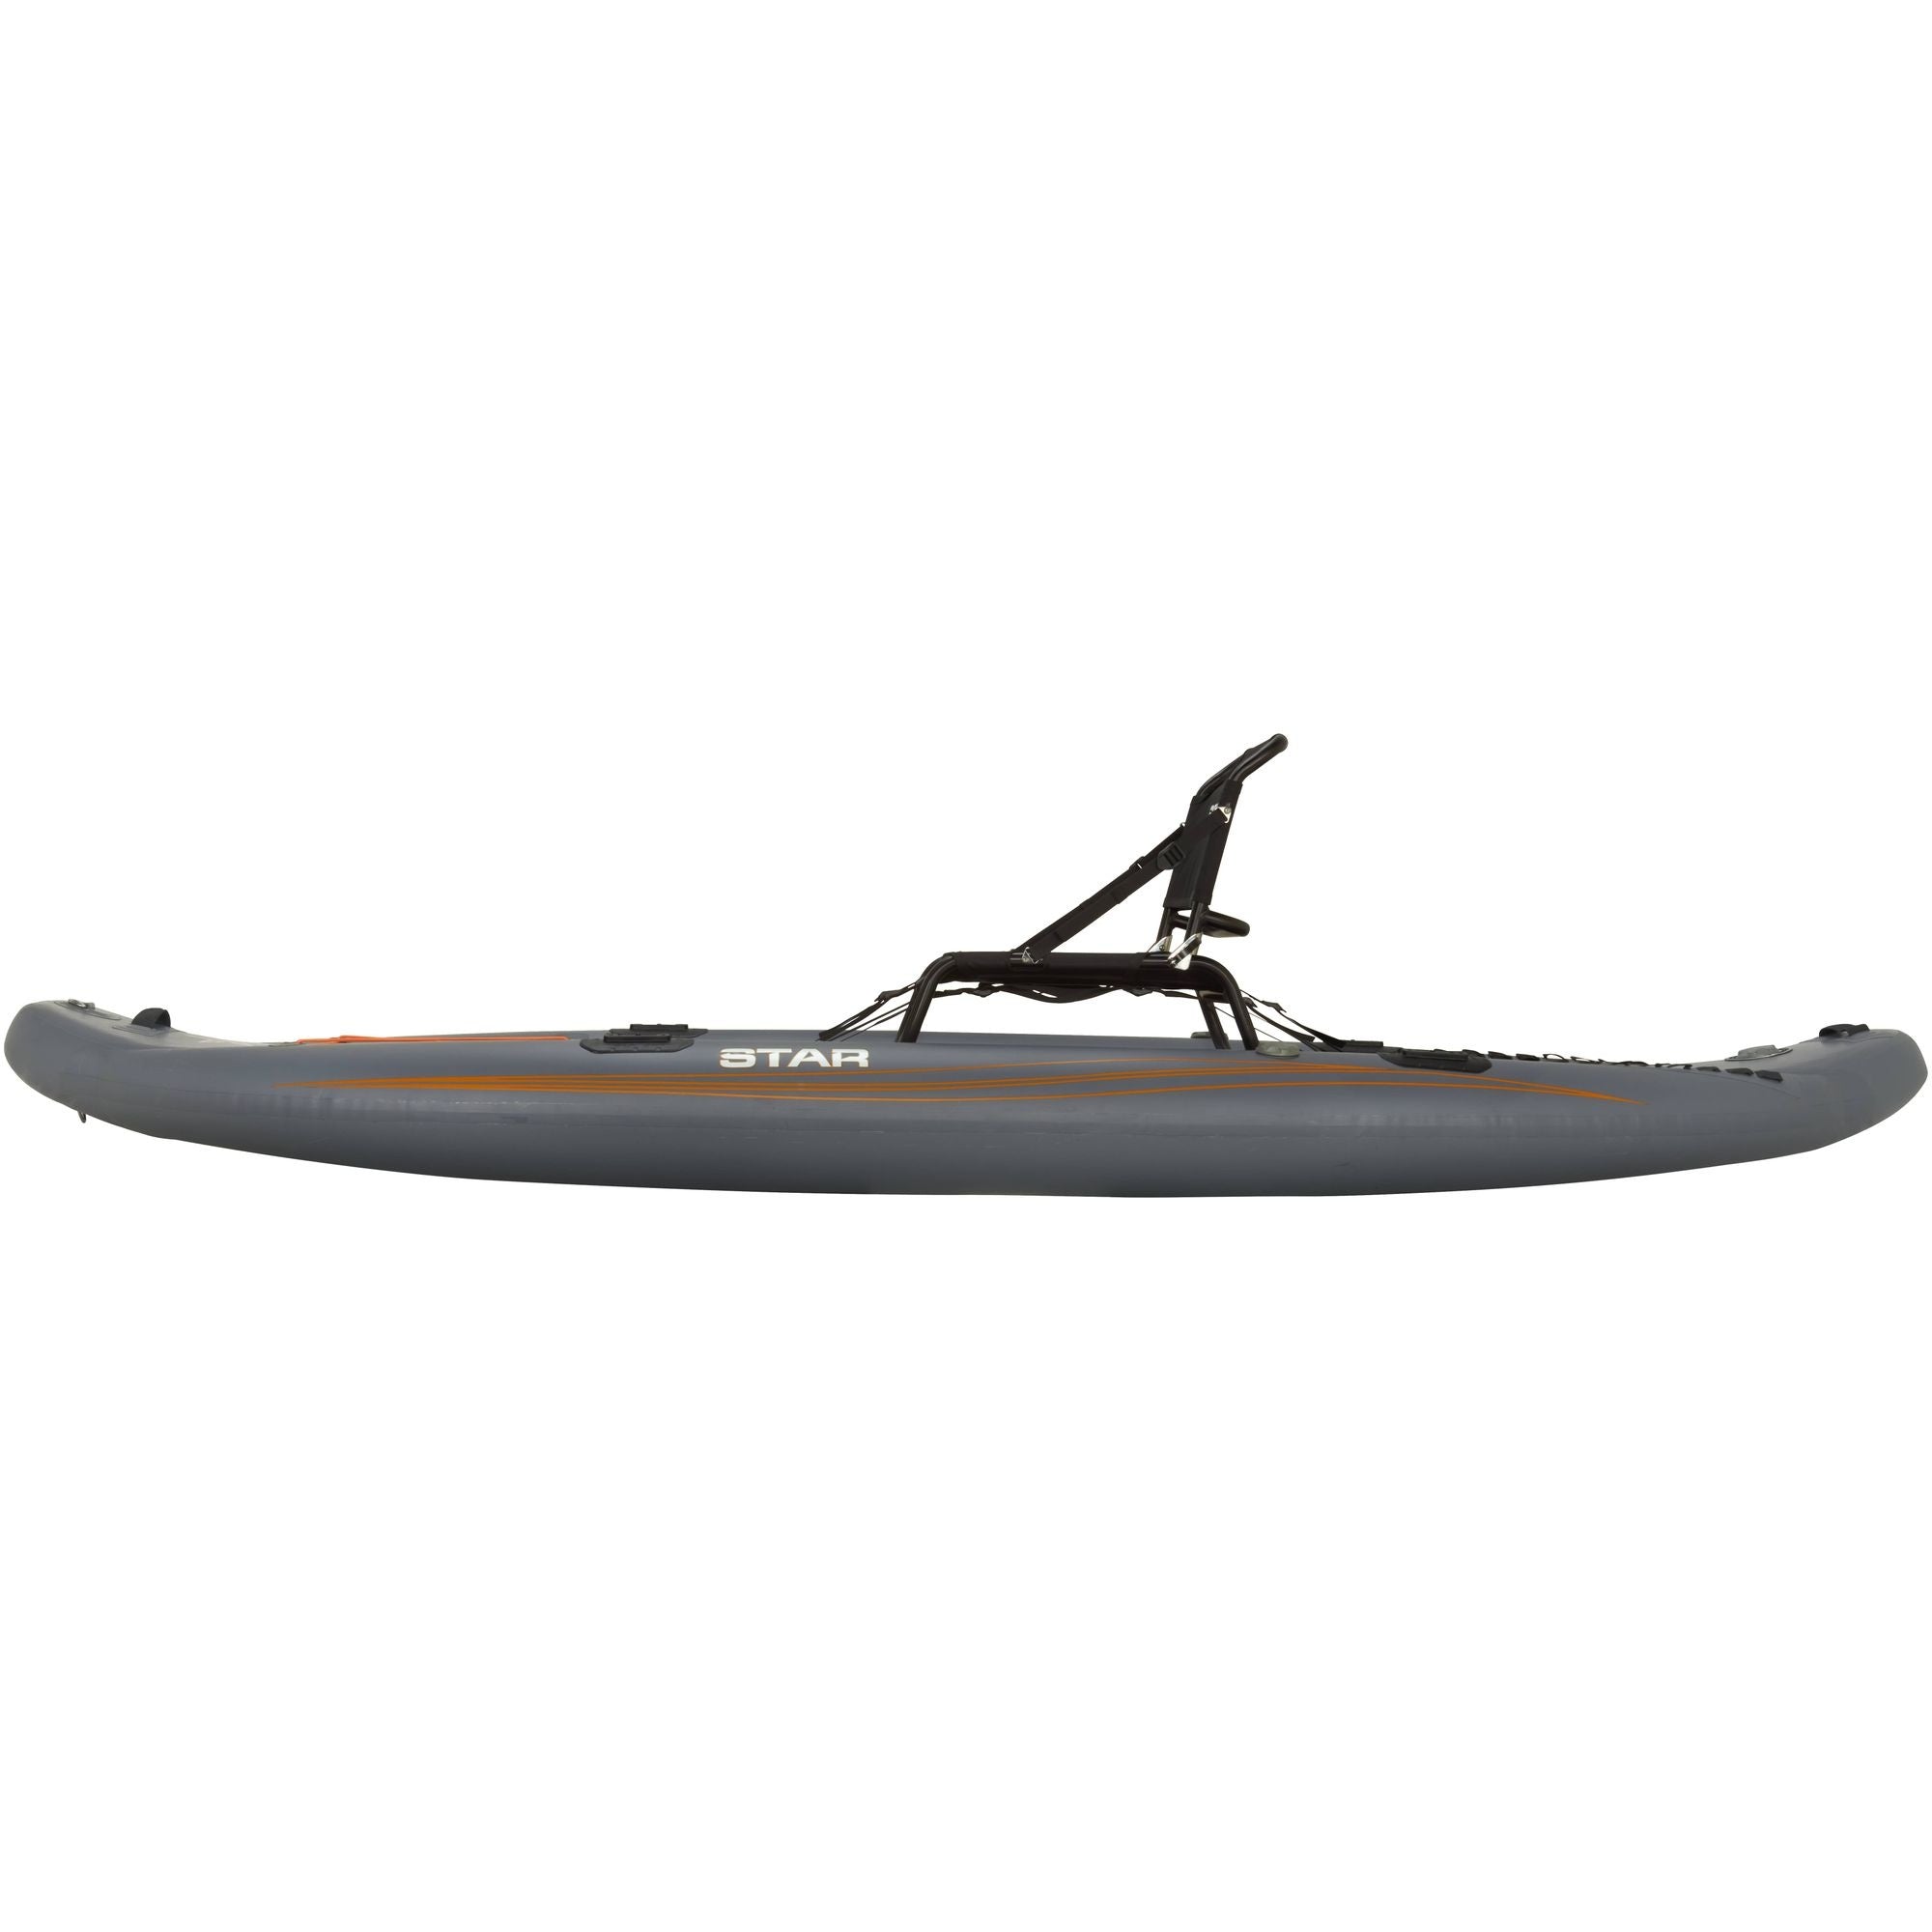 STAR - Challenger Inflatable Fishing Kayak